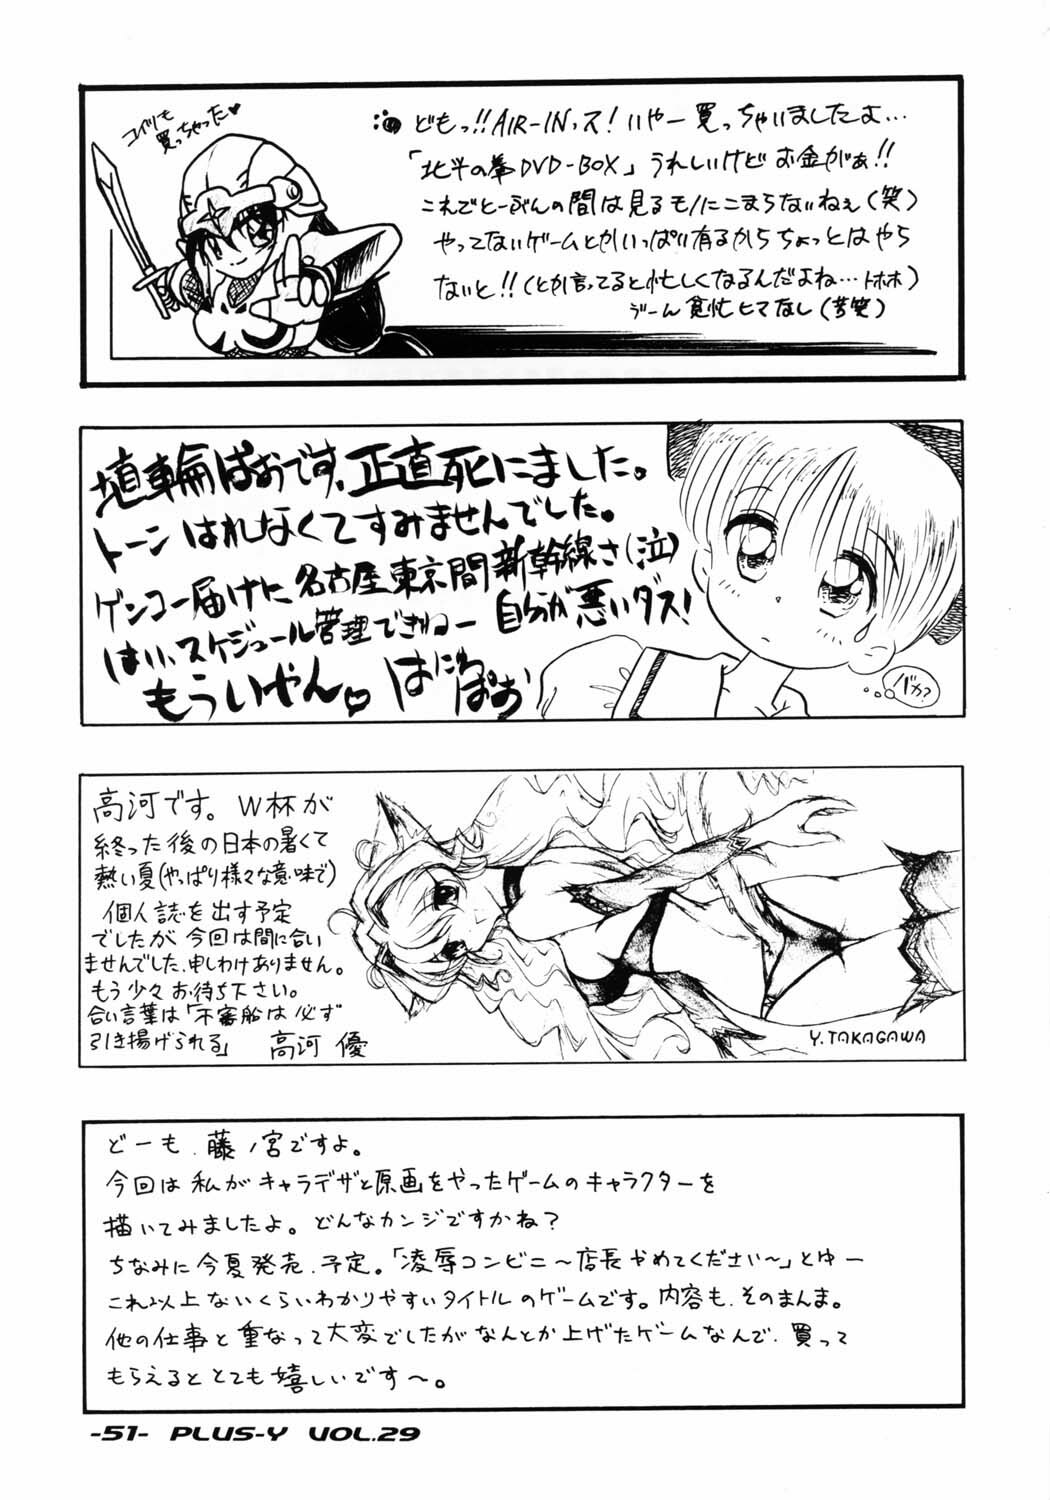 (C62) [Team Plus-Y (Various)] Plus-Y Vol. 29 (Sakura Taisen) page 49 full